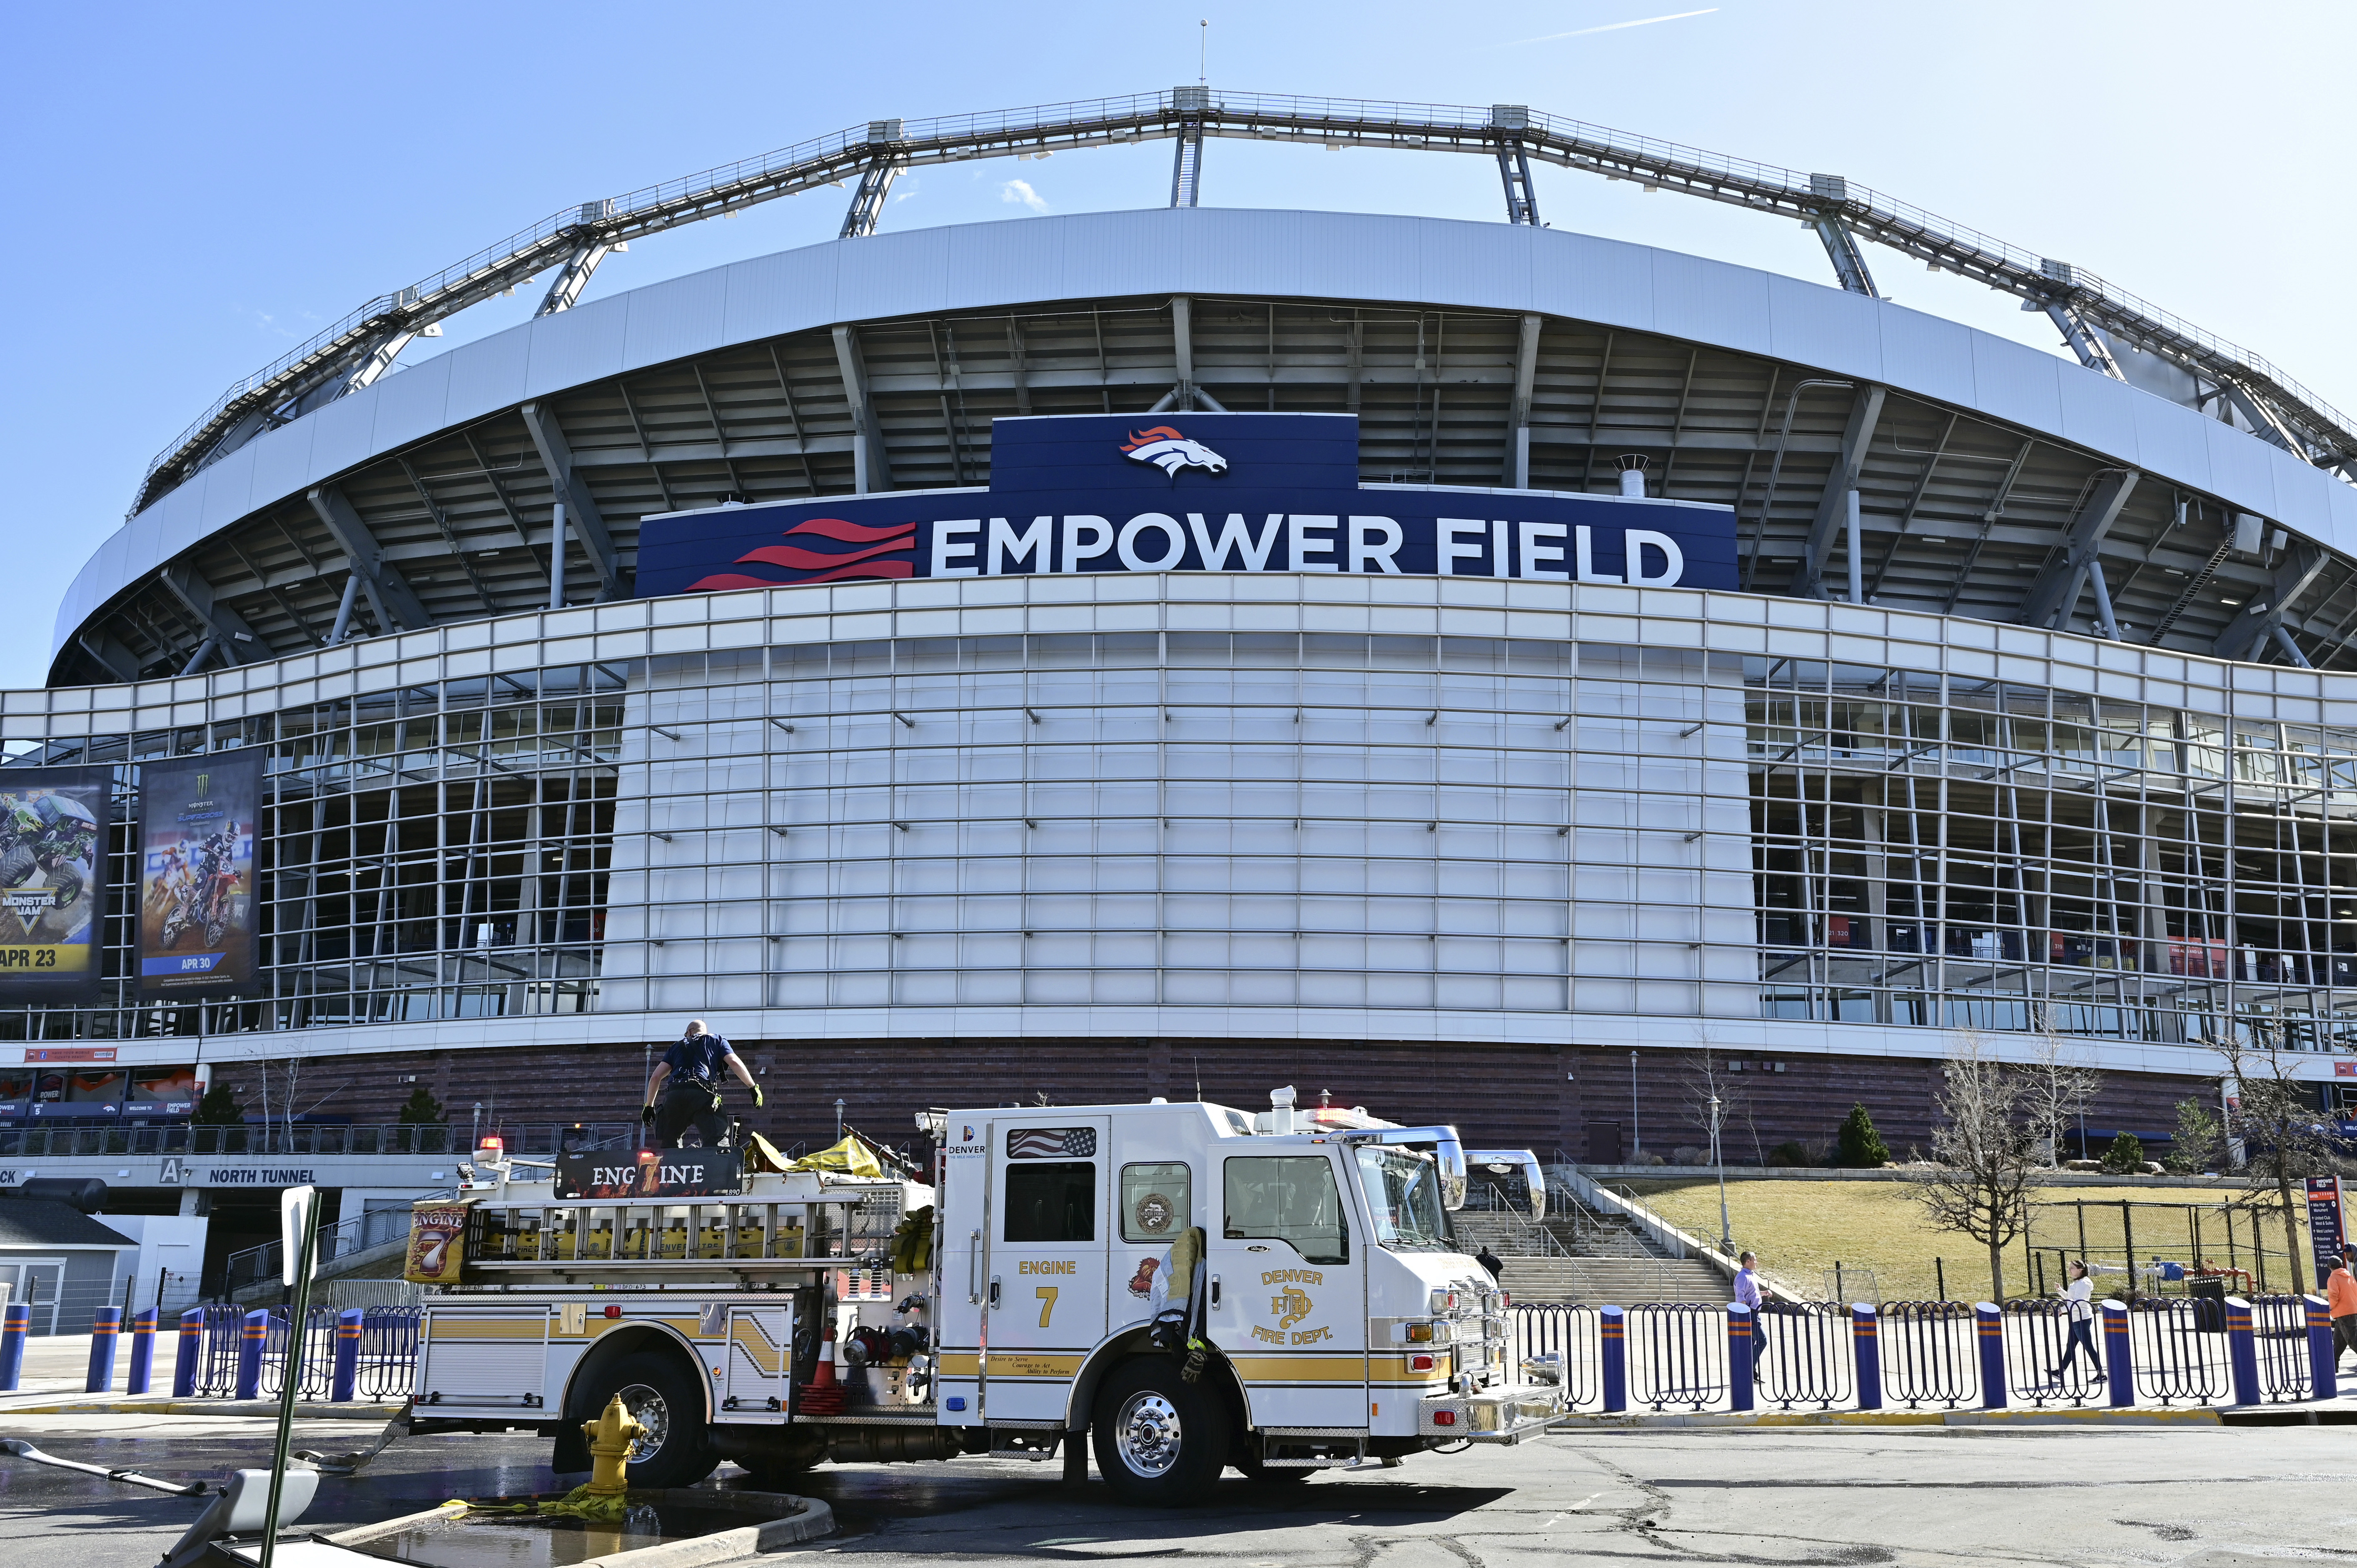 Denver Broncos Stadium at Mile High gets new name